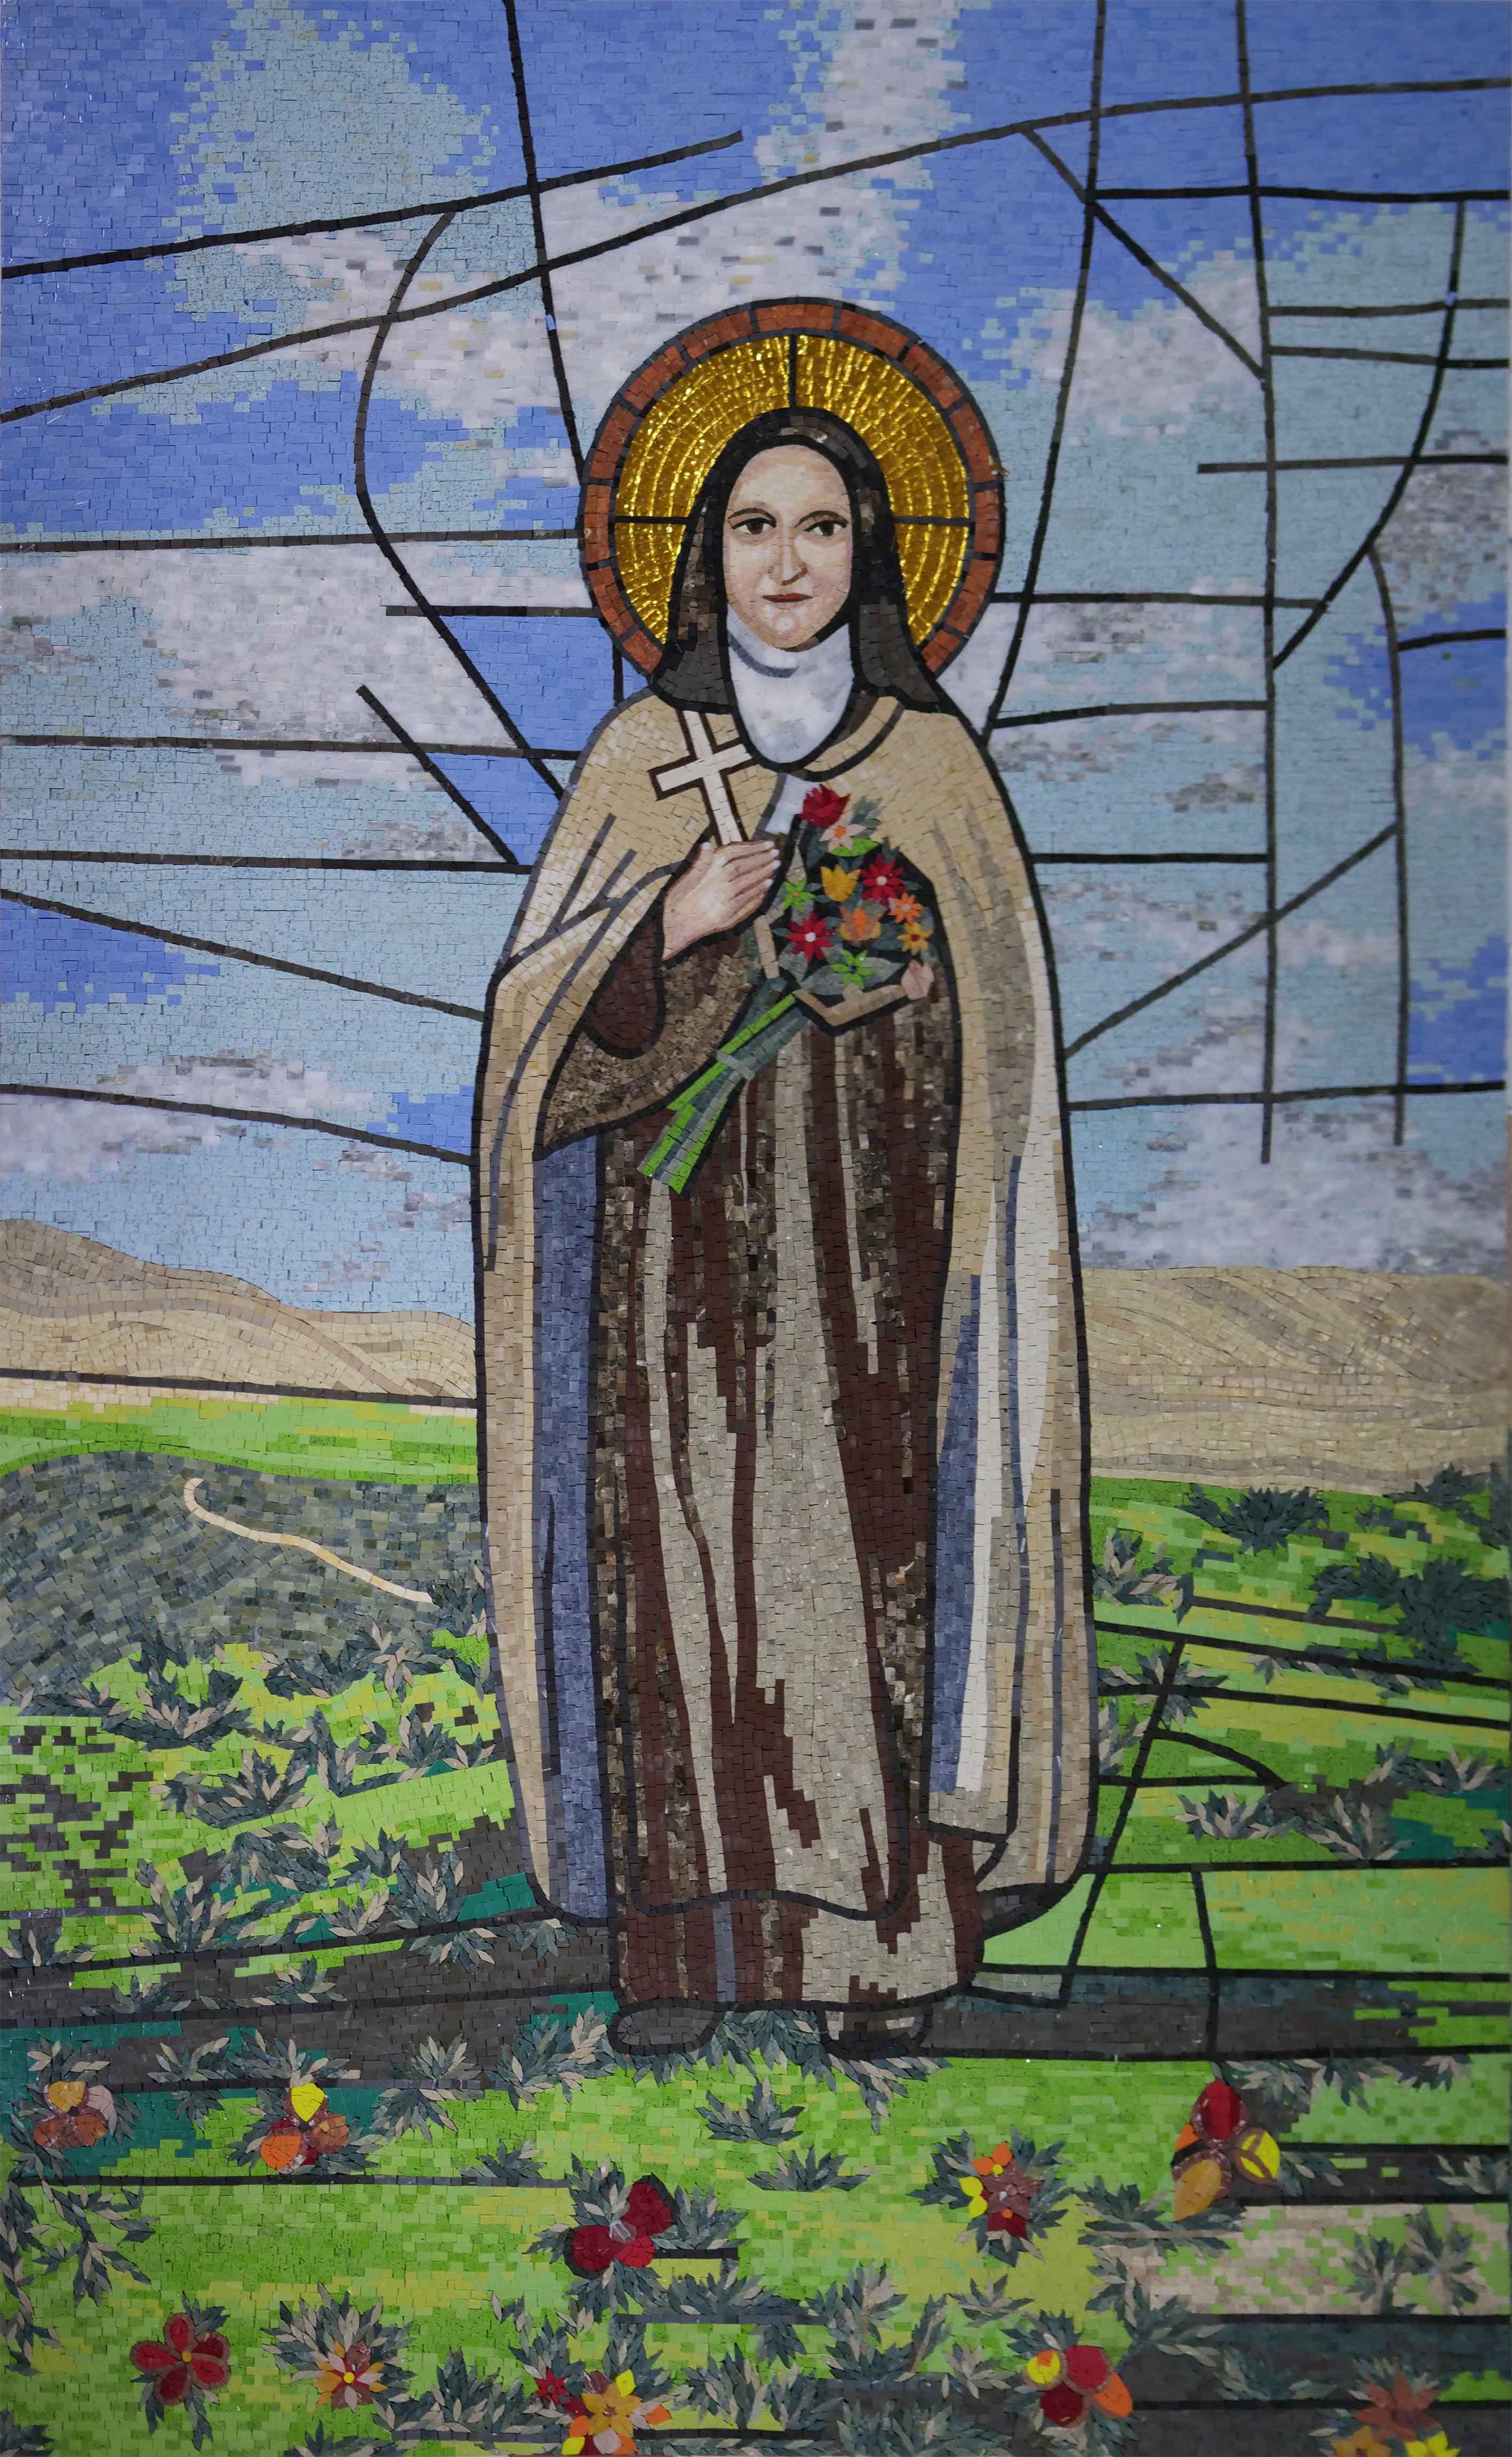 Mosaic of St. Thérèse de Lisieux